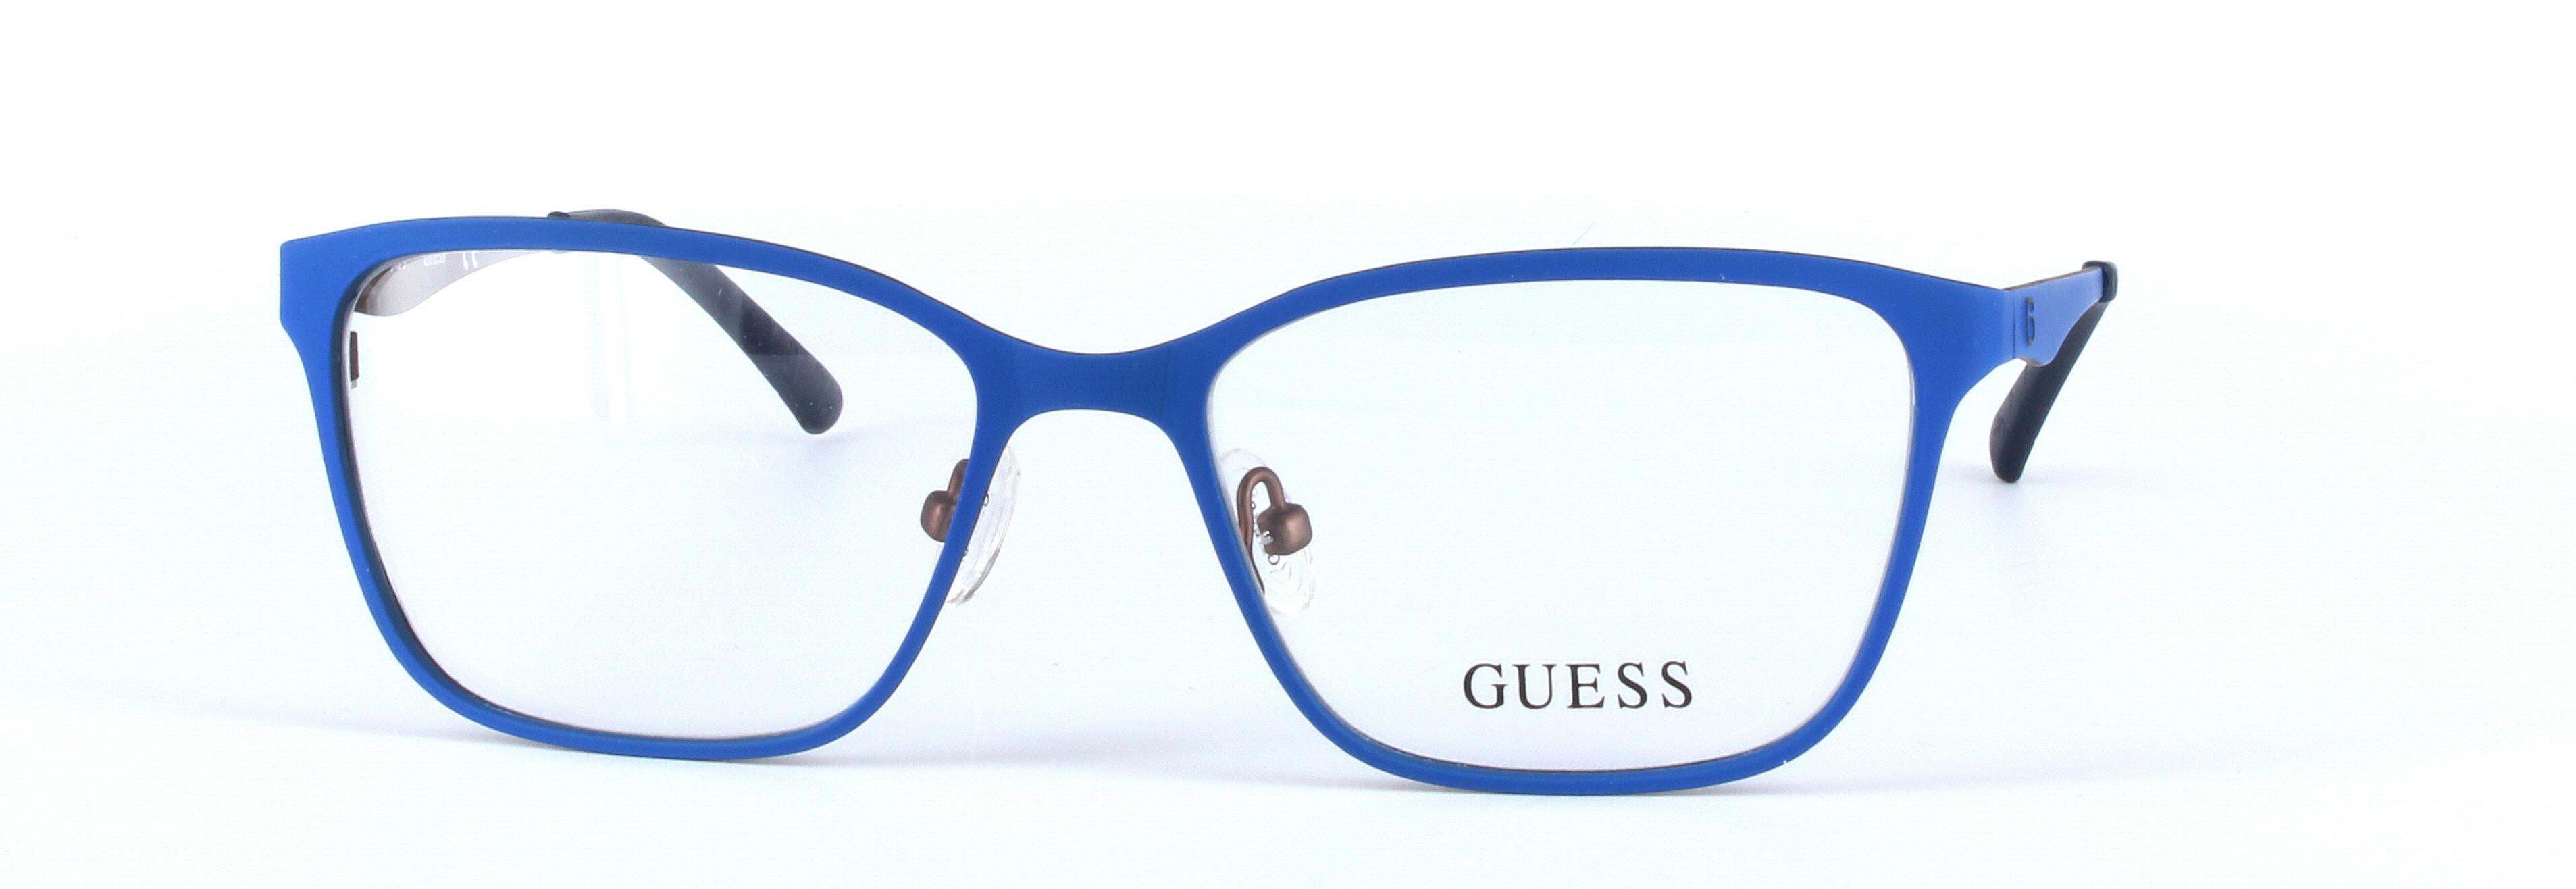 GUESS (GU2511-091) Blue Full Rim Oval Rectangular Metal Glasses - Image View 5